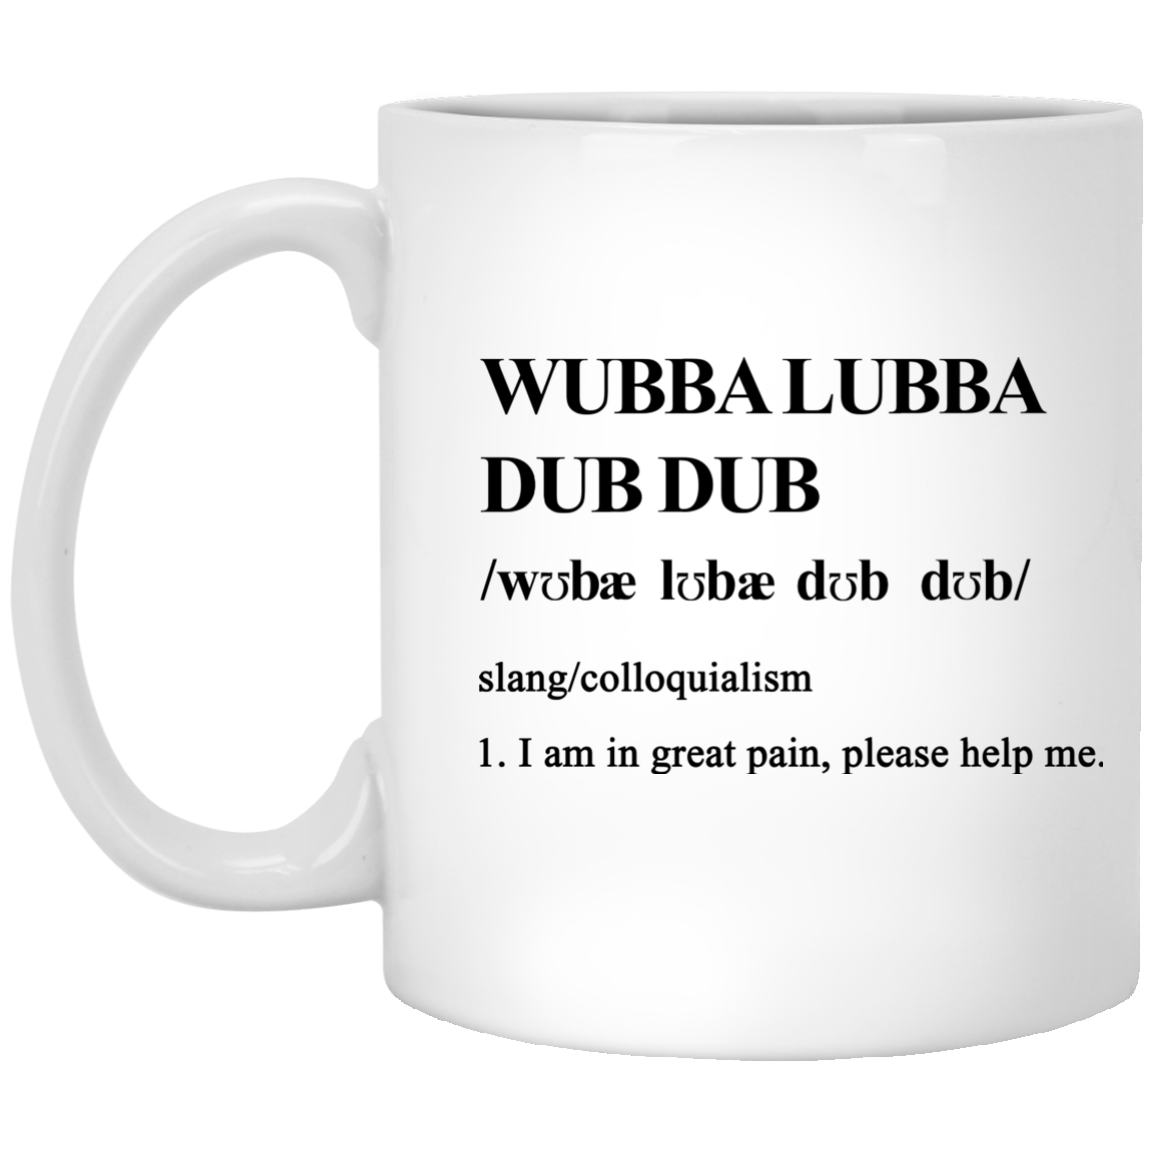 Wubba lubba dub dub definition mugs